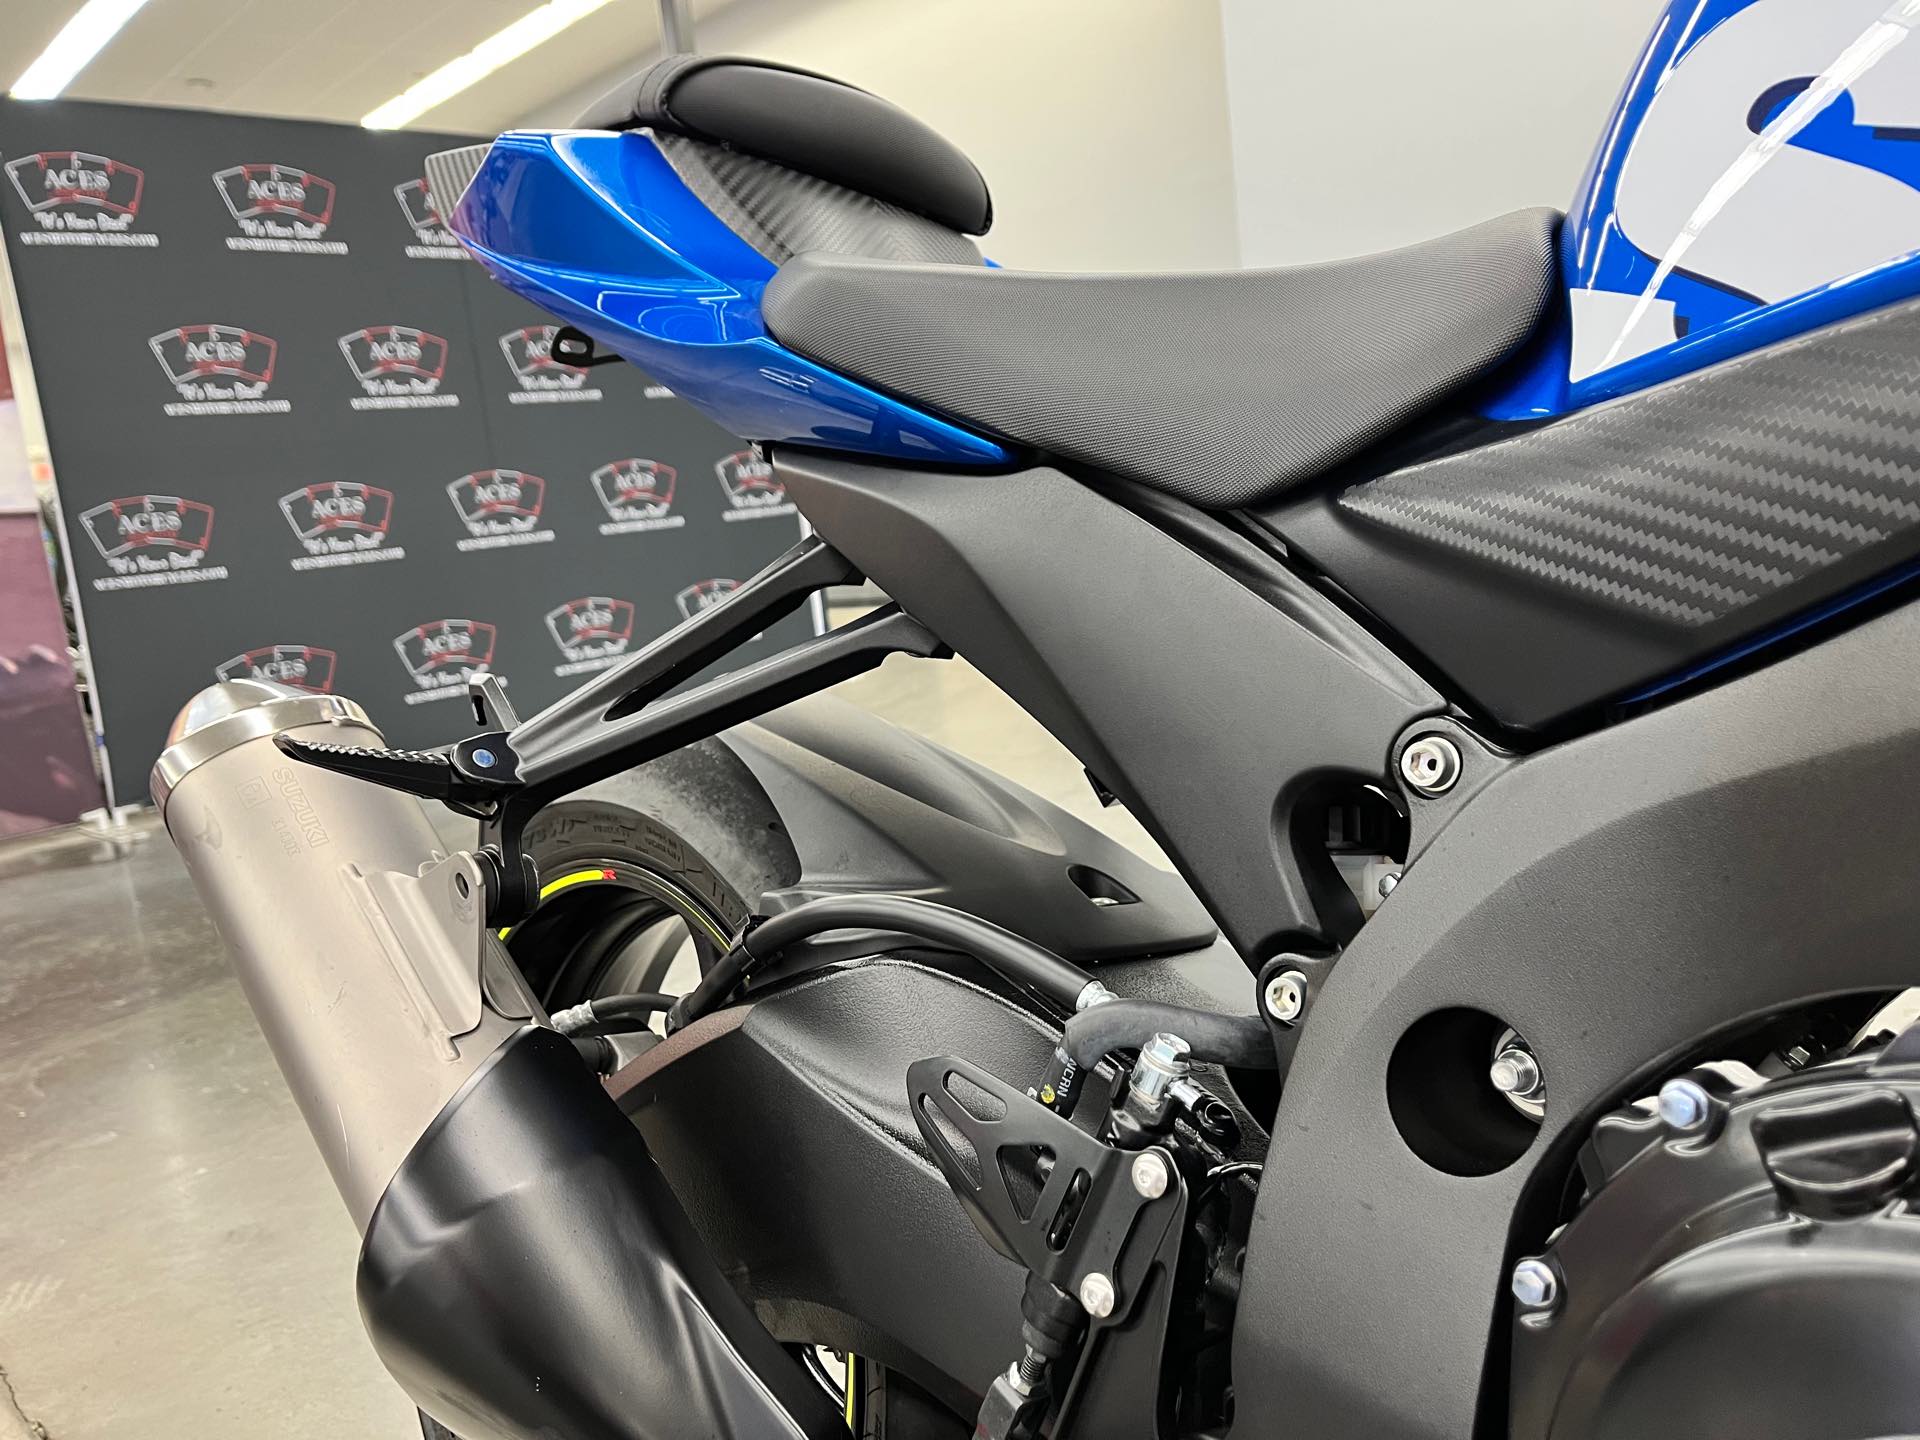 2016 Suzuki GSX-R 600 at Aces Motorcycles - Denver